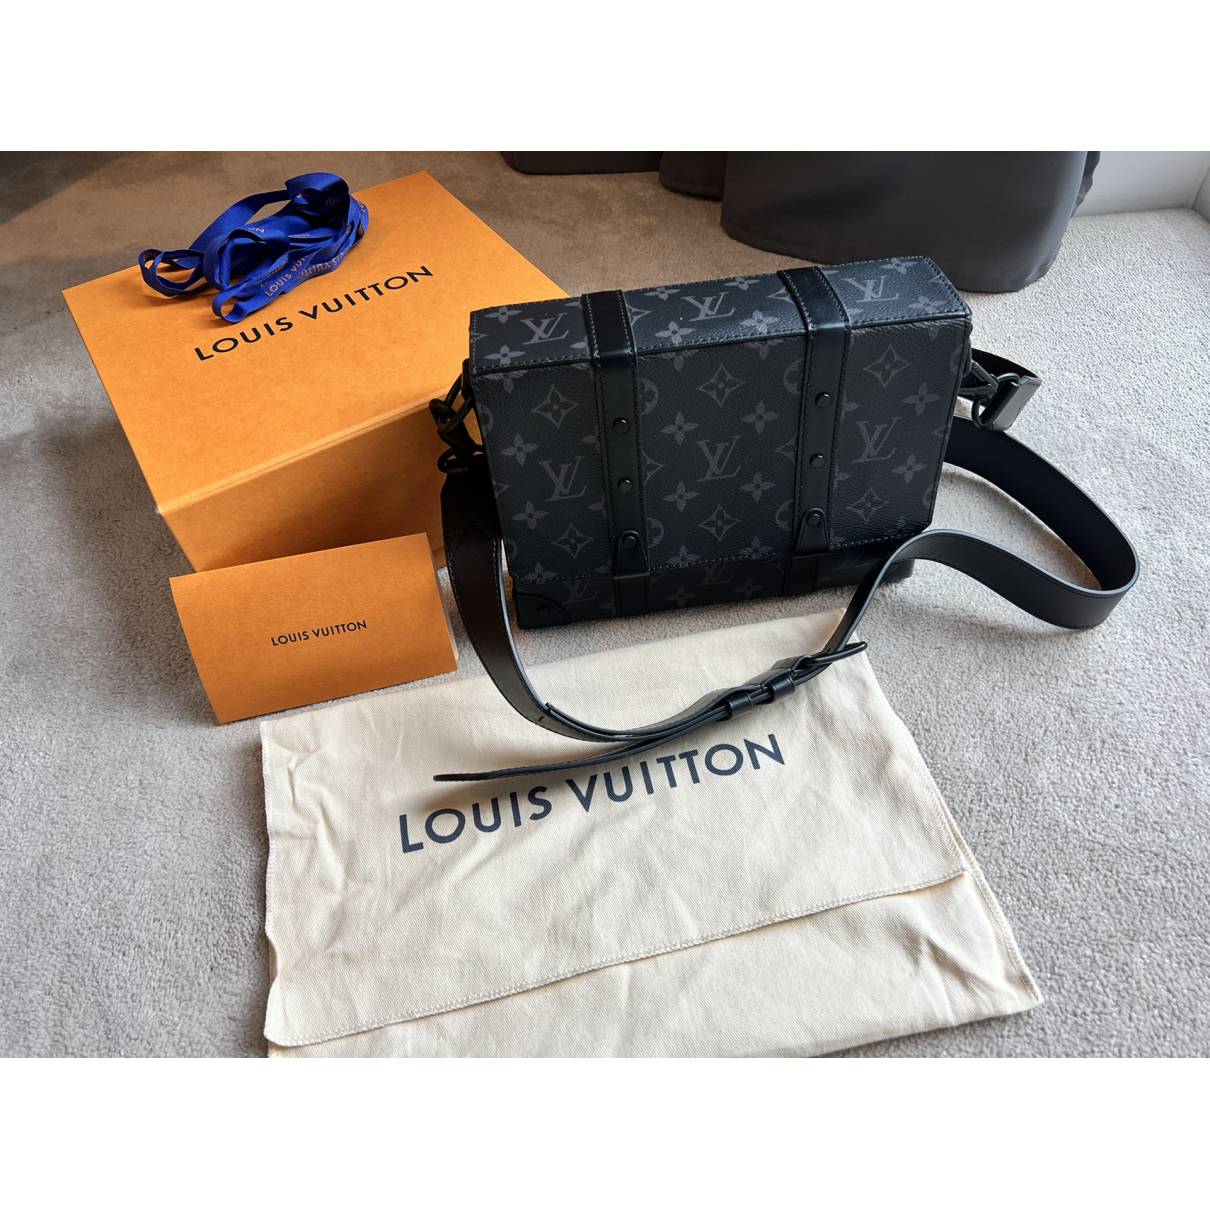 Shop Louis Vuitton Trunk Messenger (SAC MESSENGER TRUNK, M45727